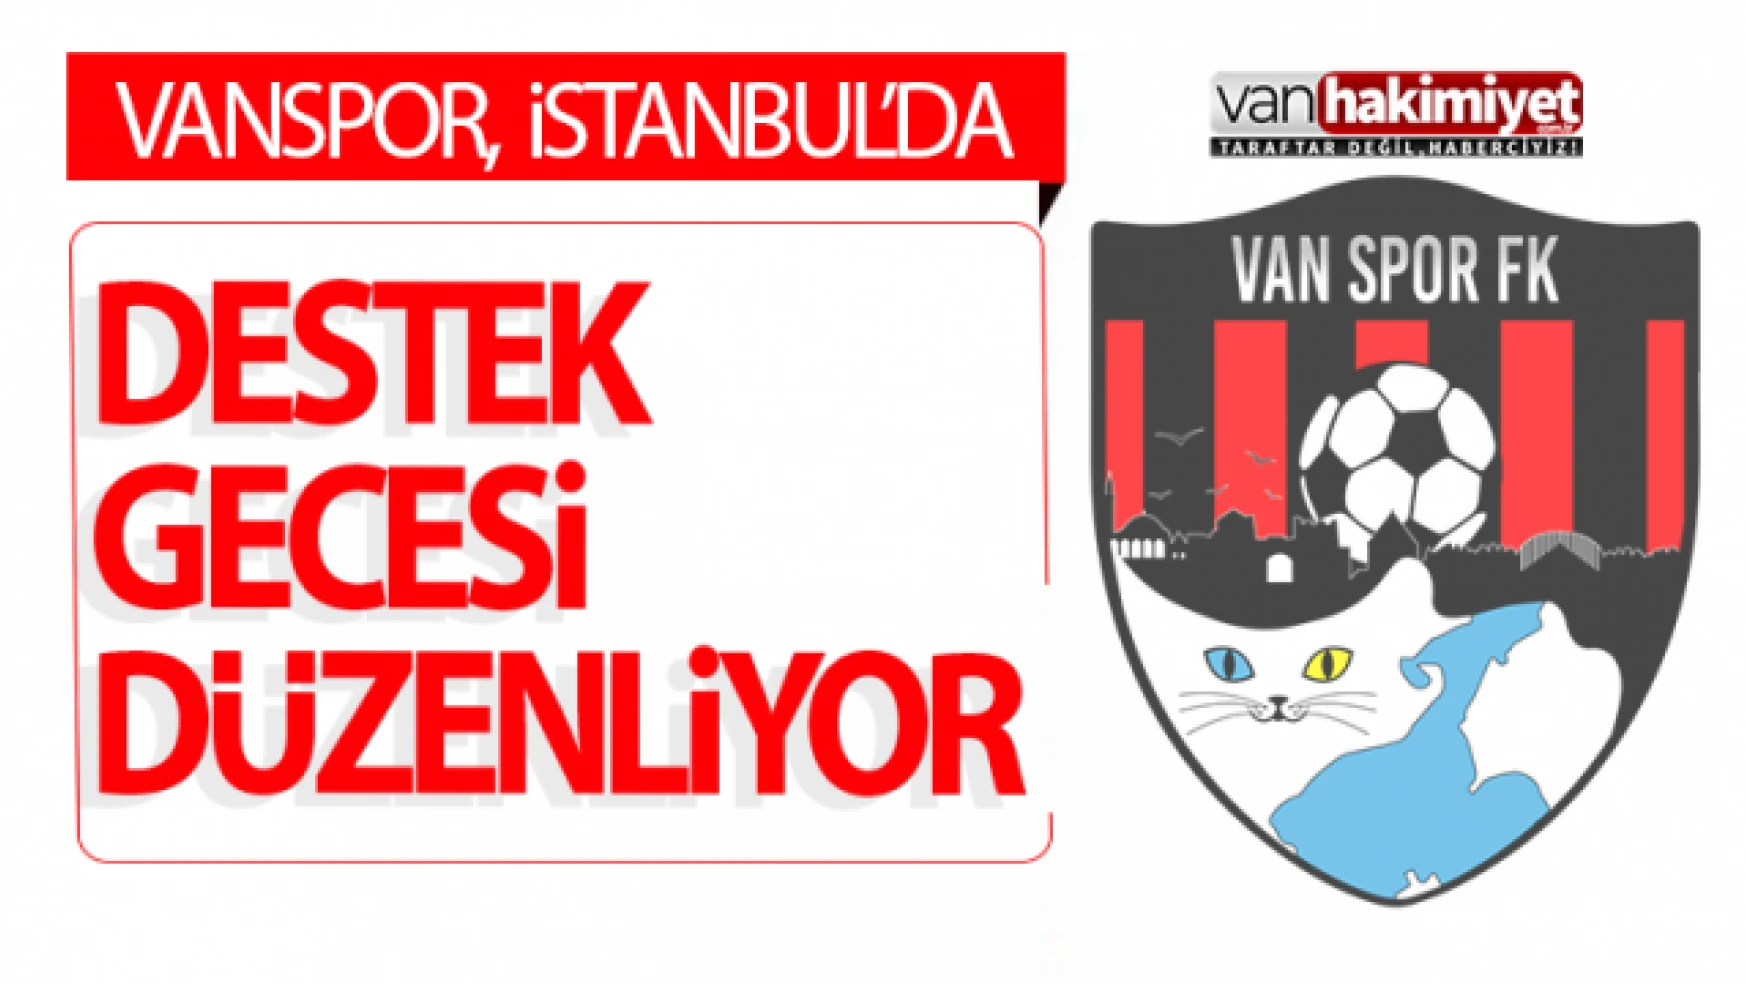 Vanspor İstanbul'da destek gecesi düzenliyor